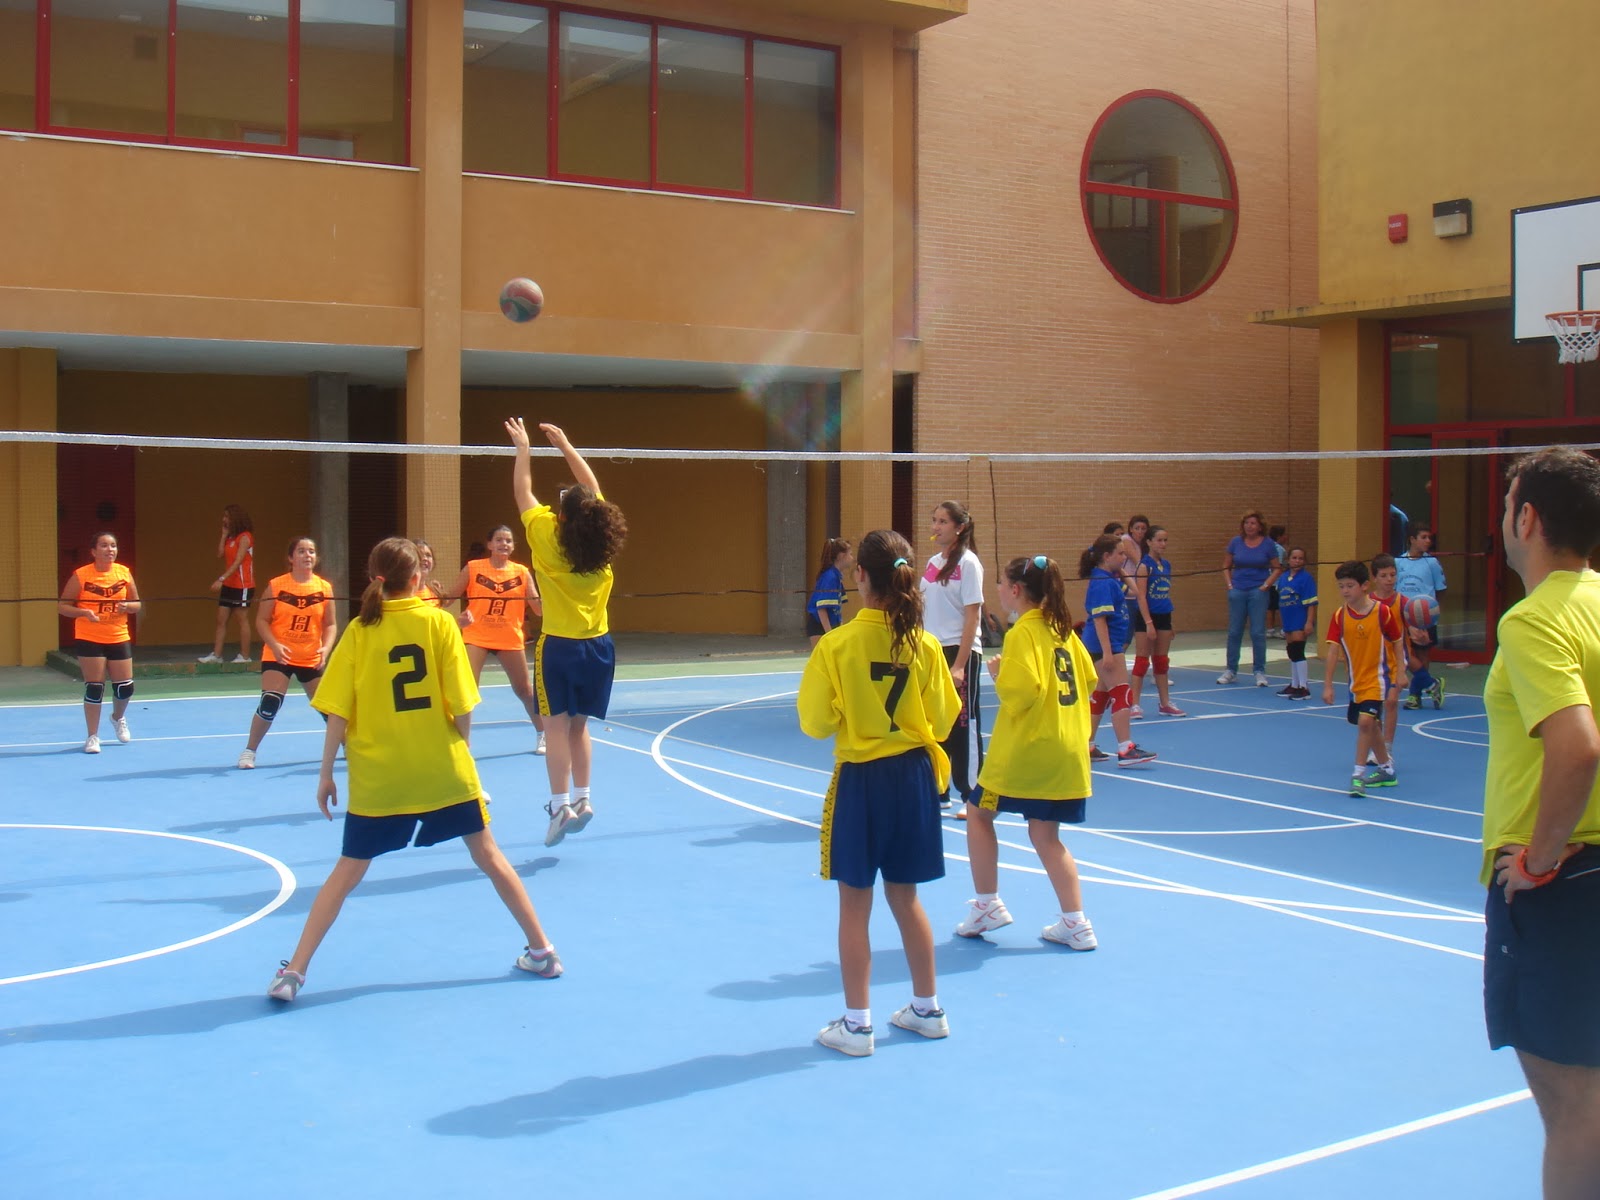 New Horizons y Caribeñas Volleyball Club inician una nueva etapa deportiva